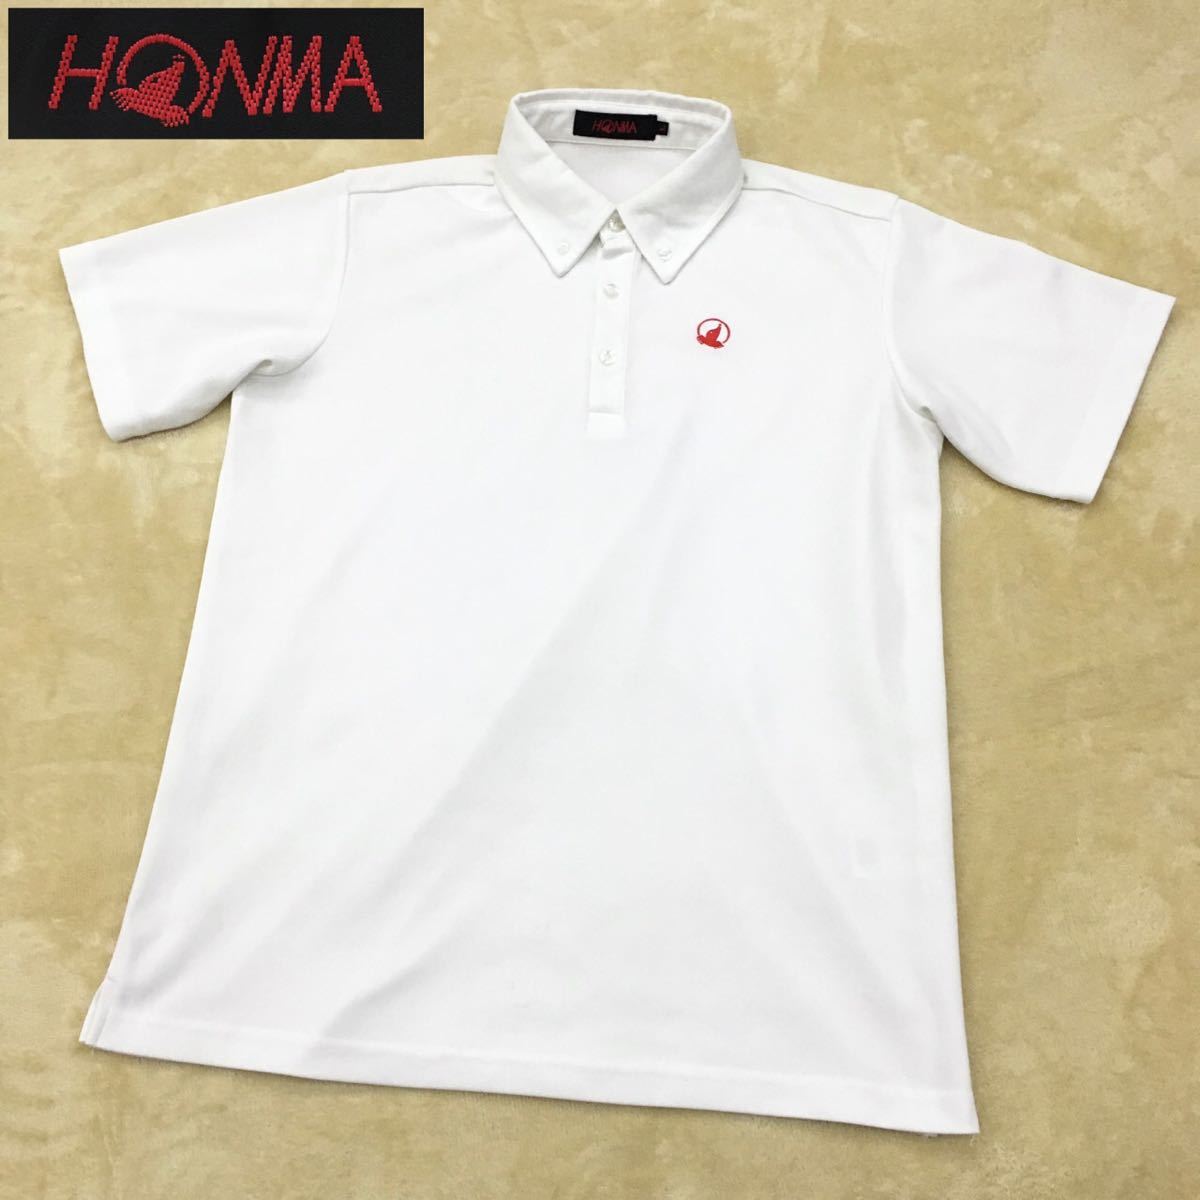 本間ゴルフ honma golf 白 半袖ポロシャツ ゴルフウェア 日本製 m